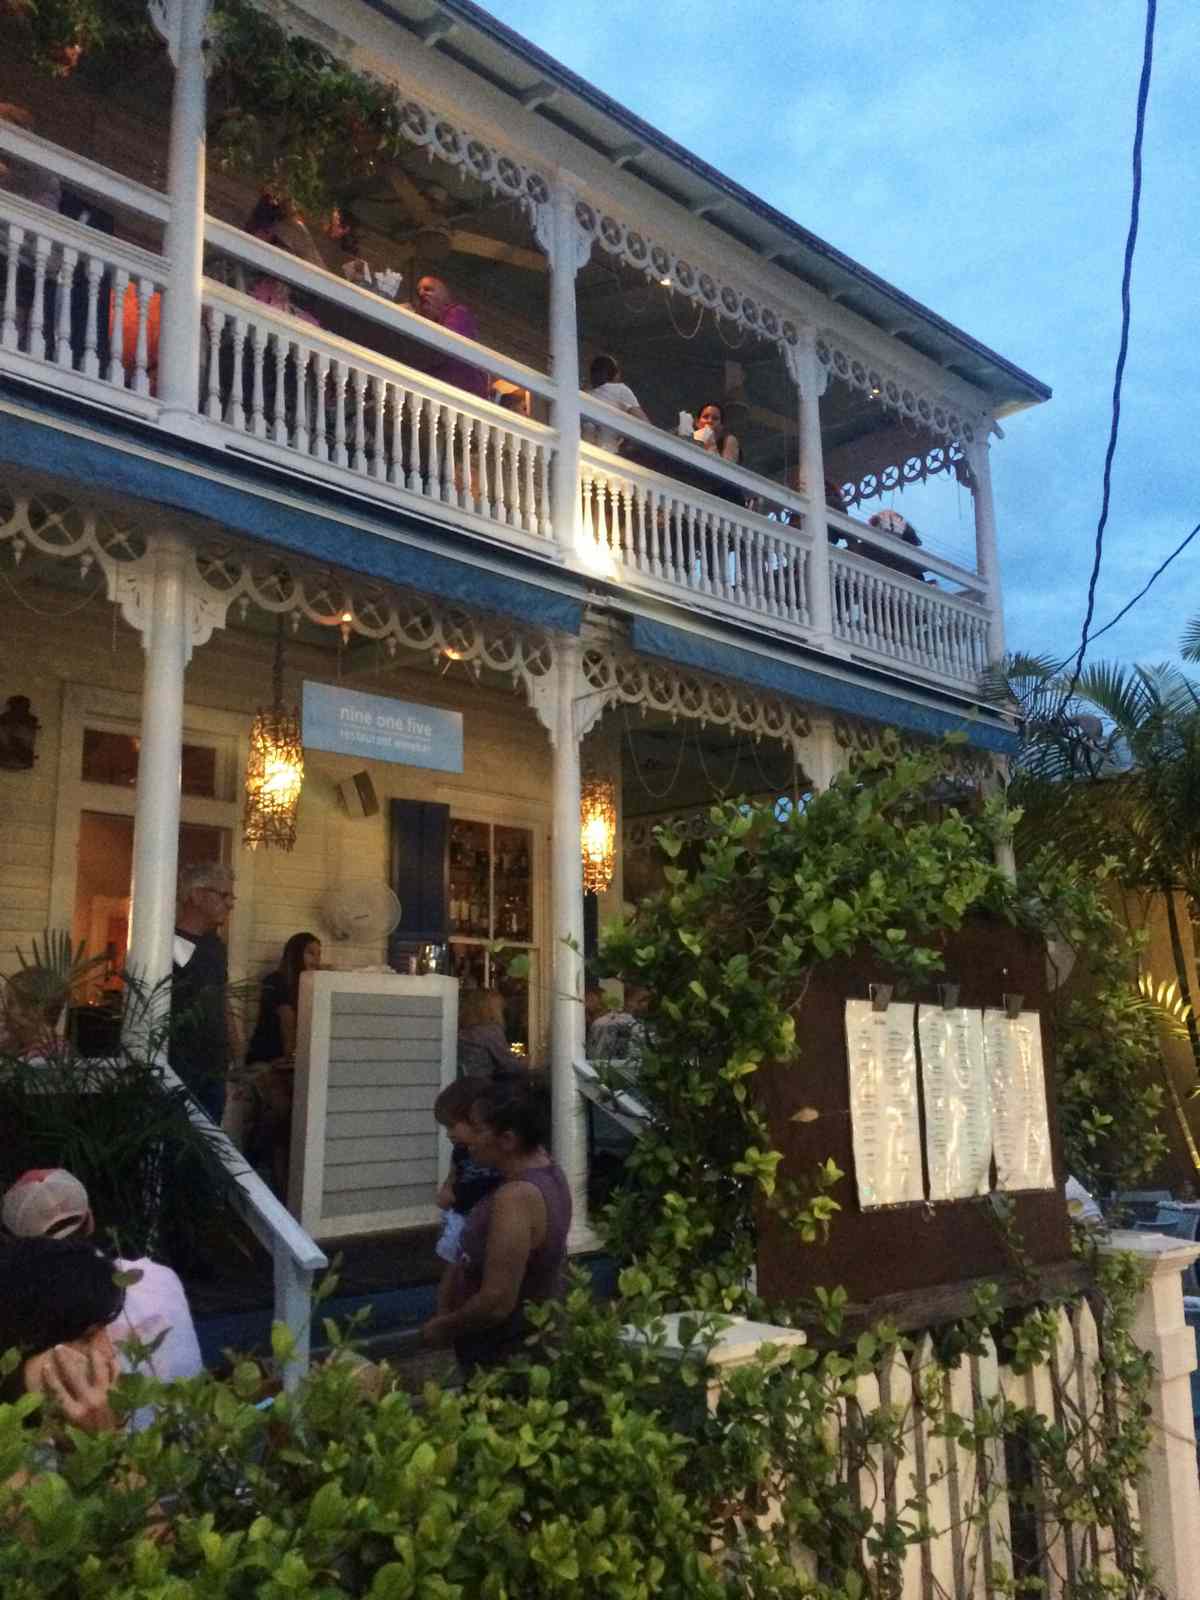 Key West: Drinks